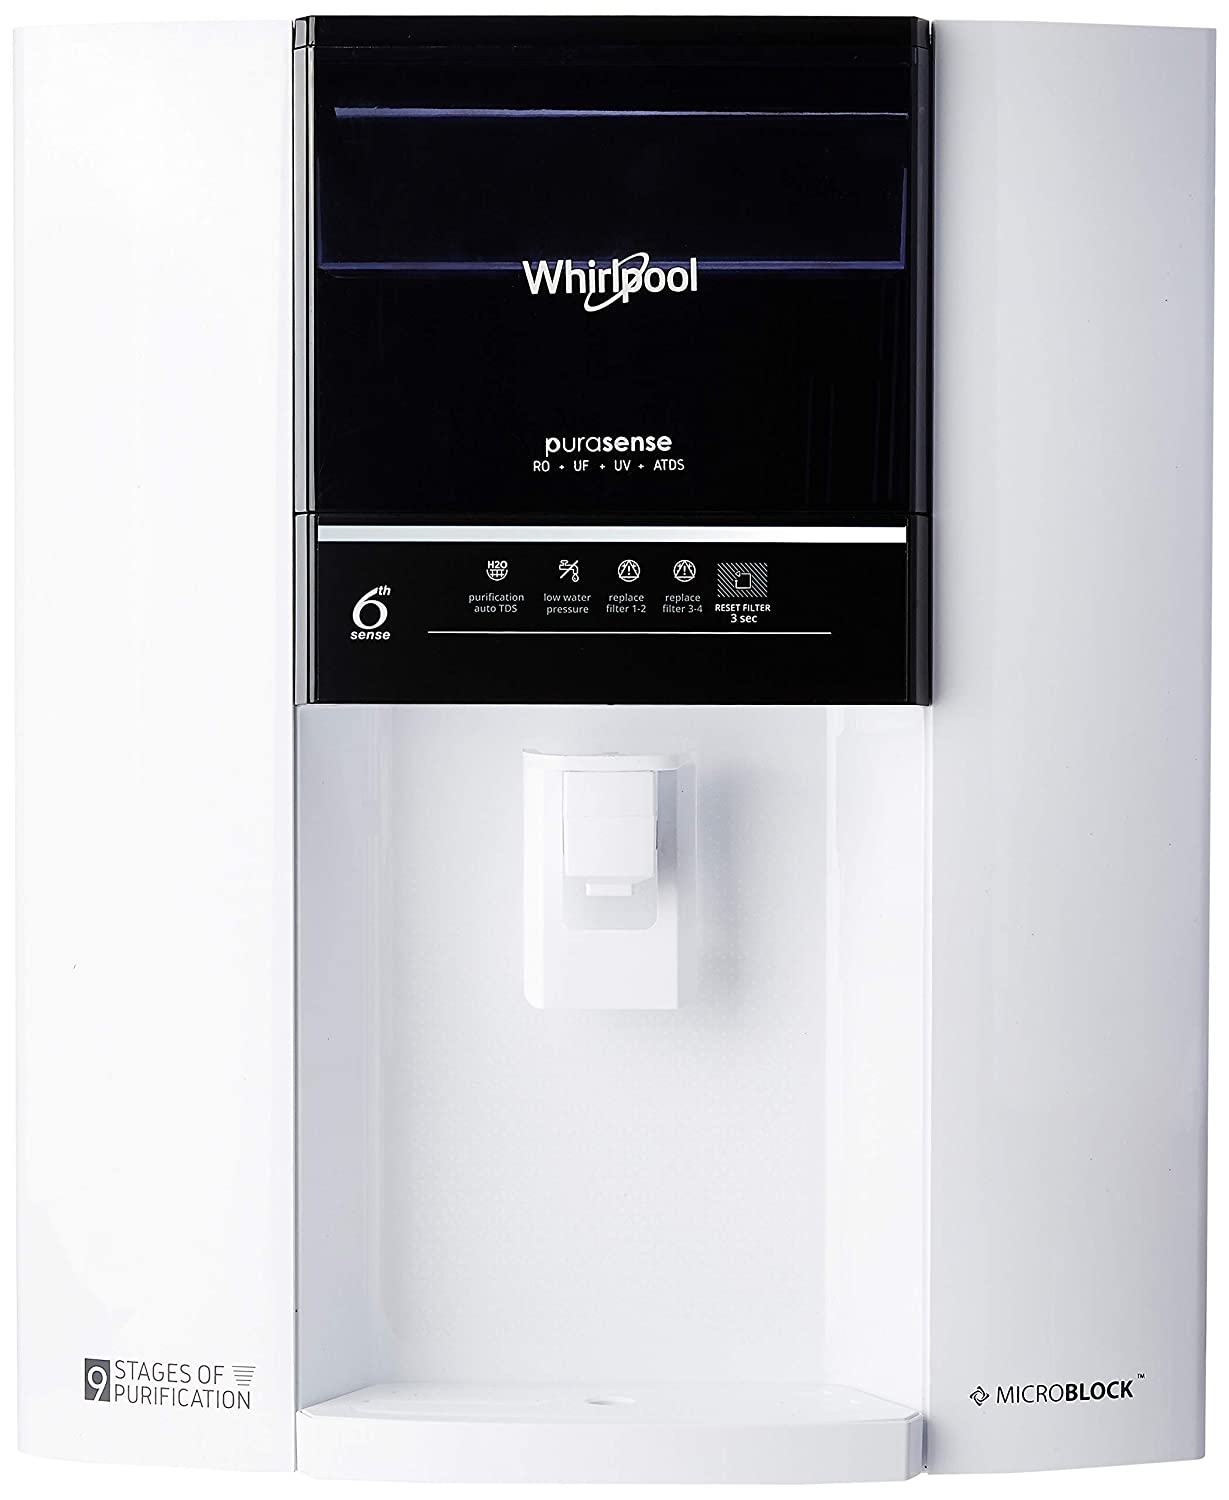 Whirlpool Purasense 7 L RO + UV + UF + TDS Water Purifier